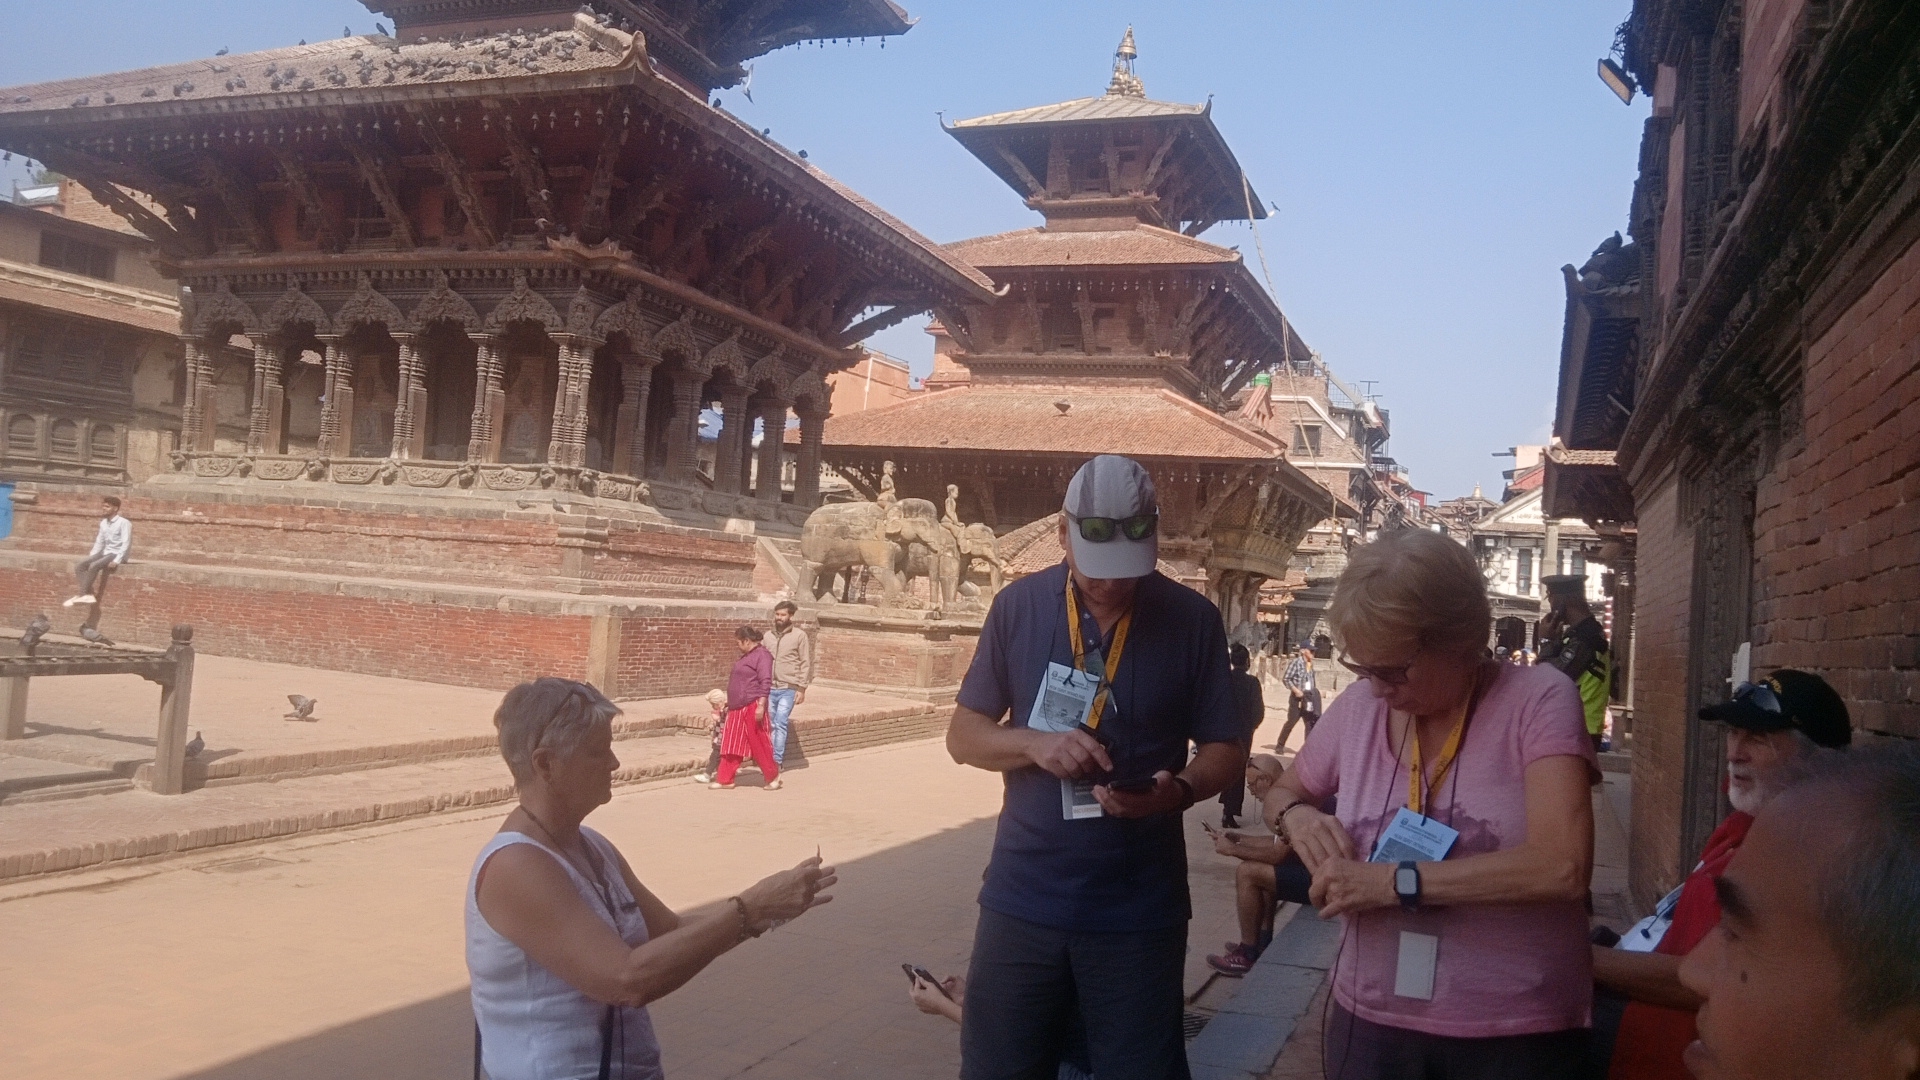 विश्व सम्पदा सूचीमा सूचिकृत कृष्ण मन्दिरमा पर्यटक रमाउँदै, हेर्नुहोस् भिडियो सहित